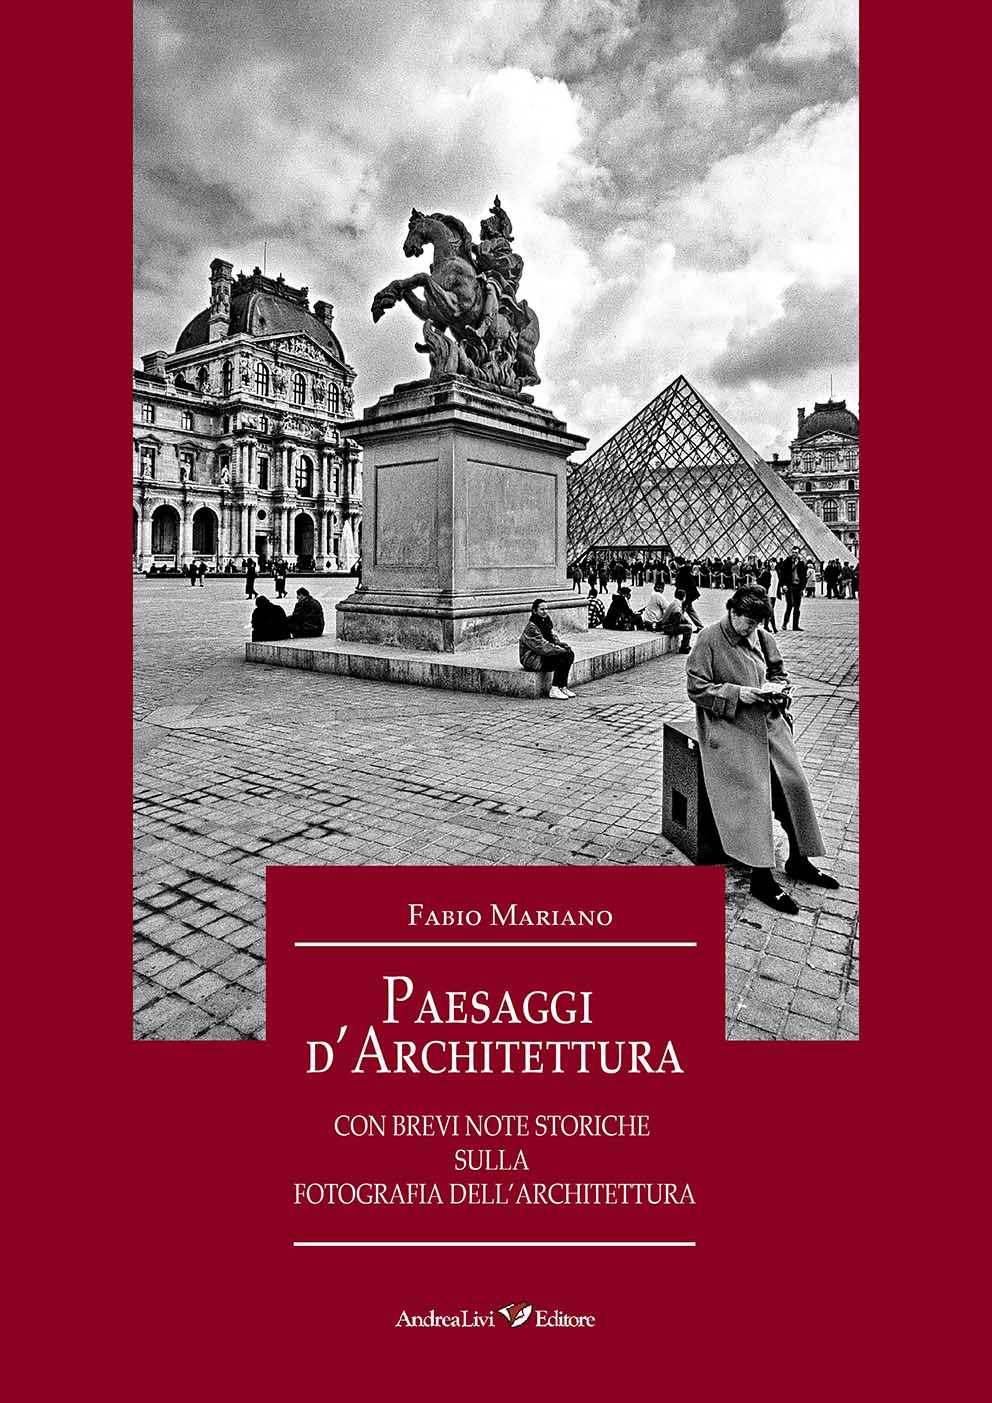 Fabio Mariano Paesaggi d’Architettura, con brevi note storiche sulla fotografia dell’architettura, Prefazione di Stefano Papetti